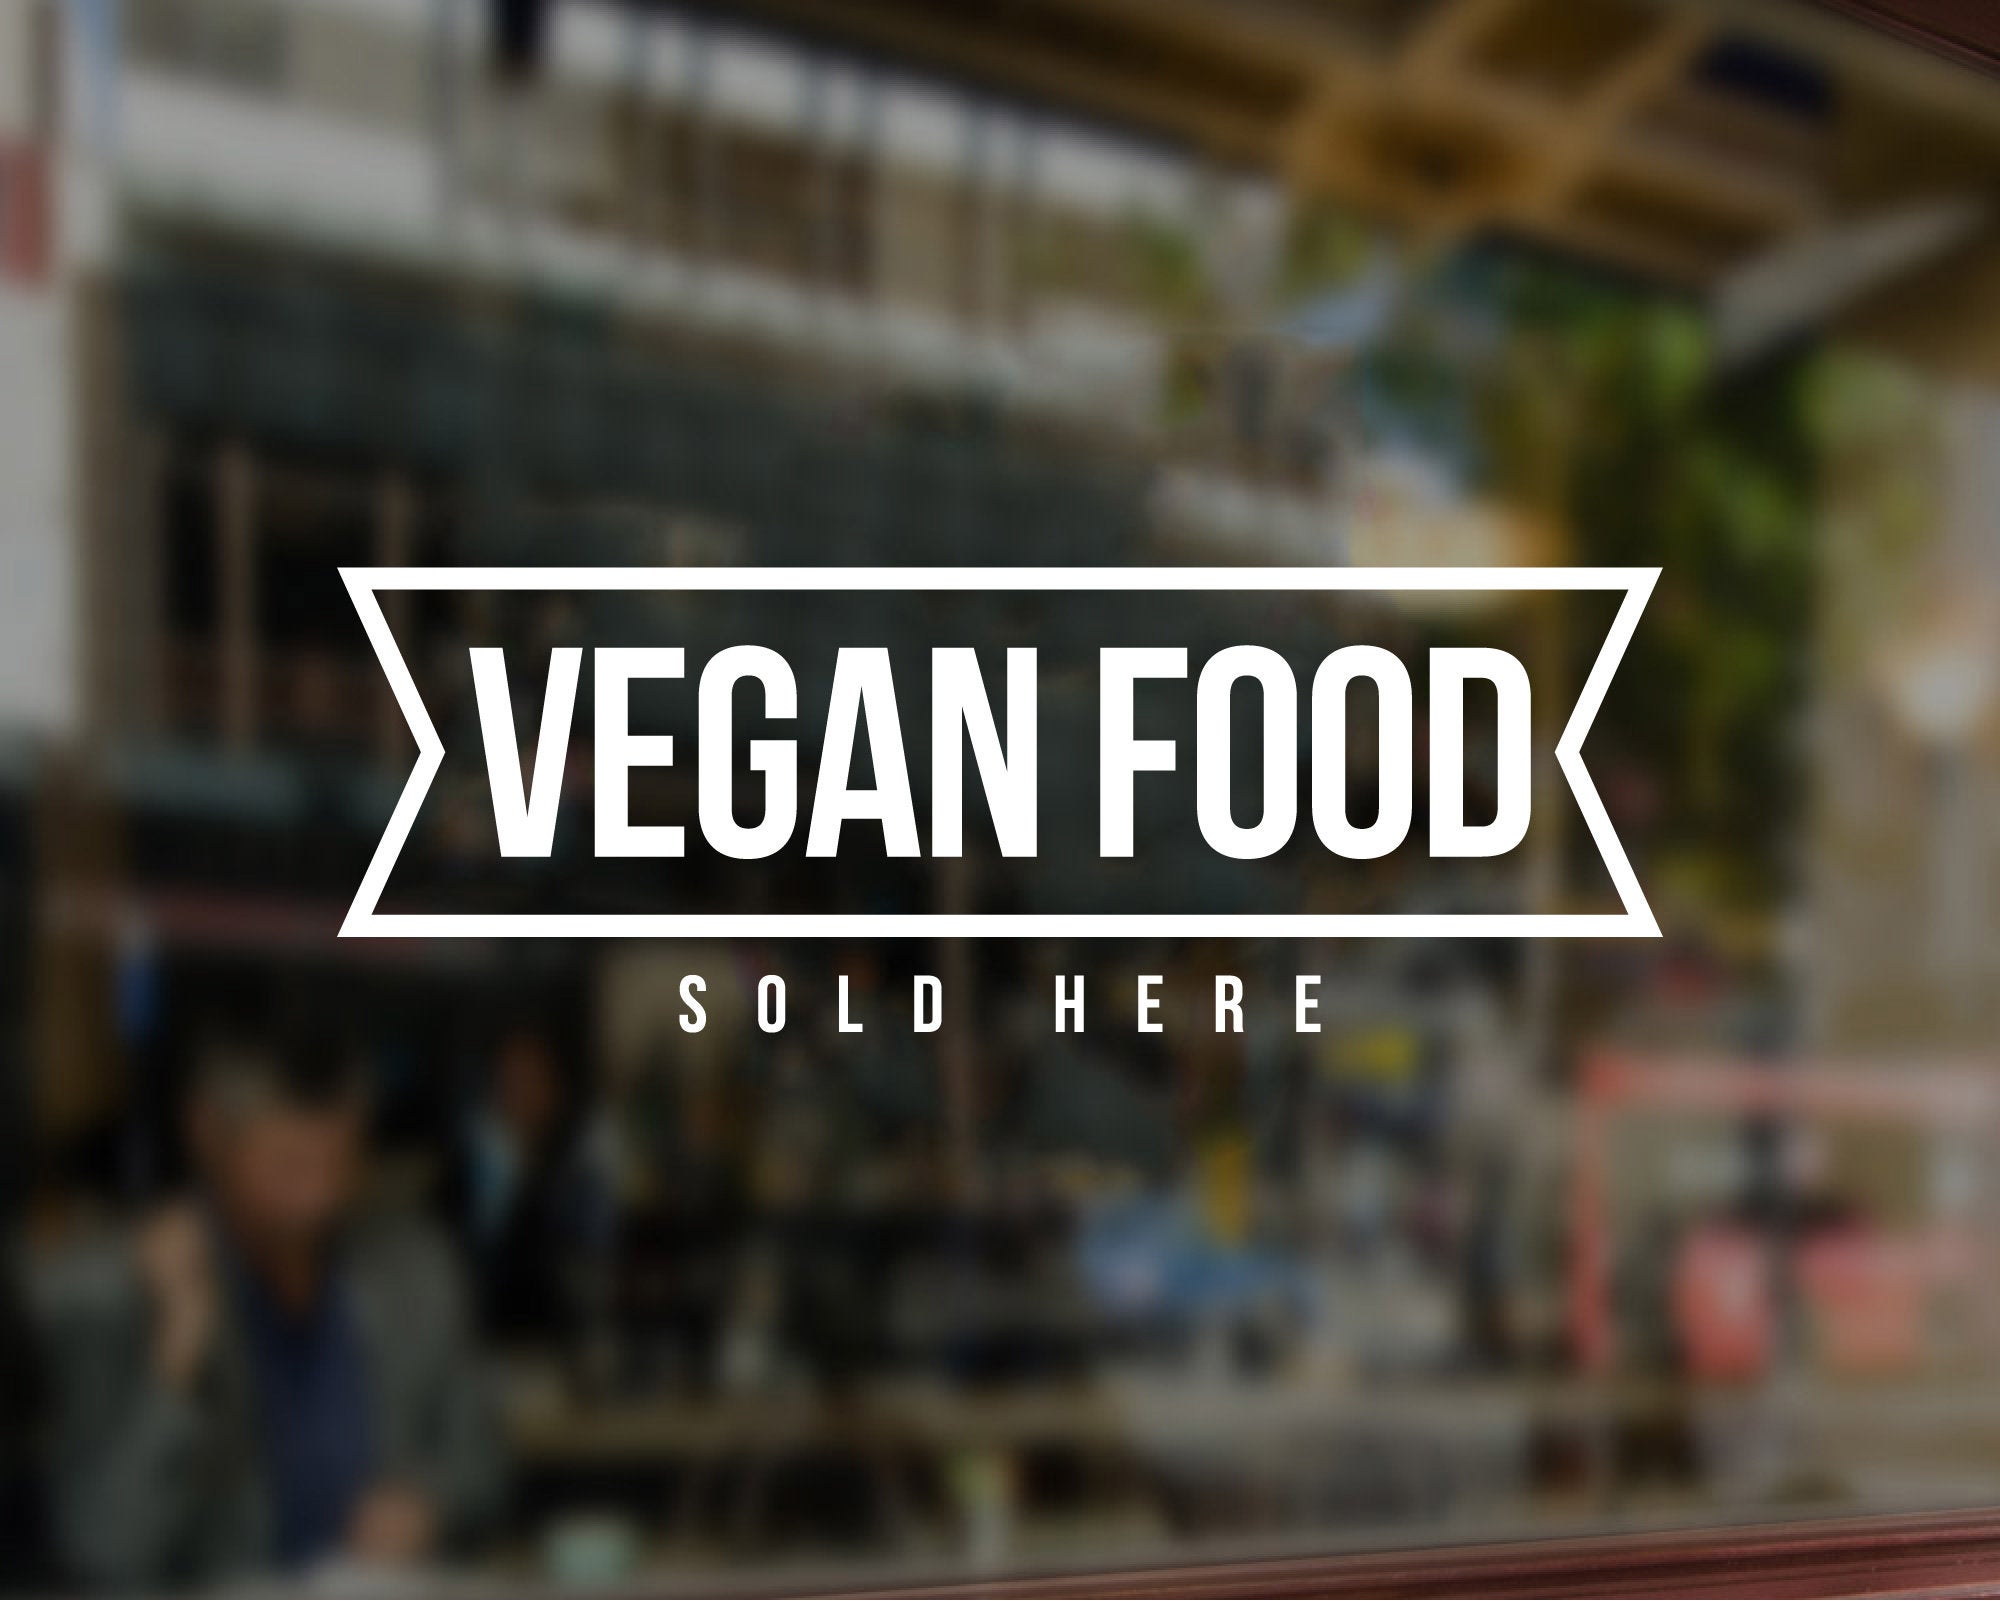 Vegan Sticker Vegan Healthy sticker Restaurant shop window Decal 